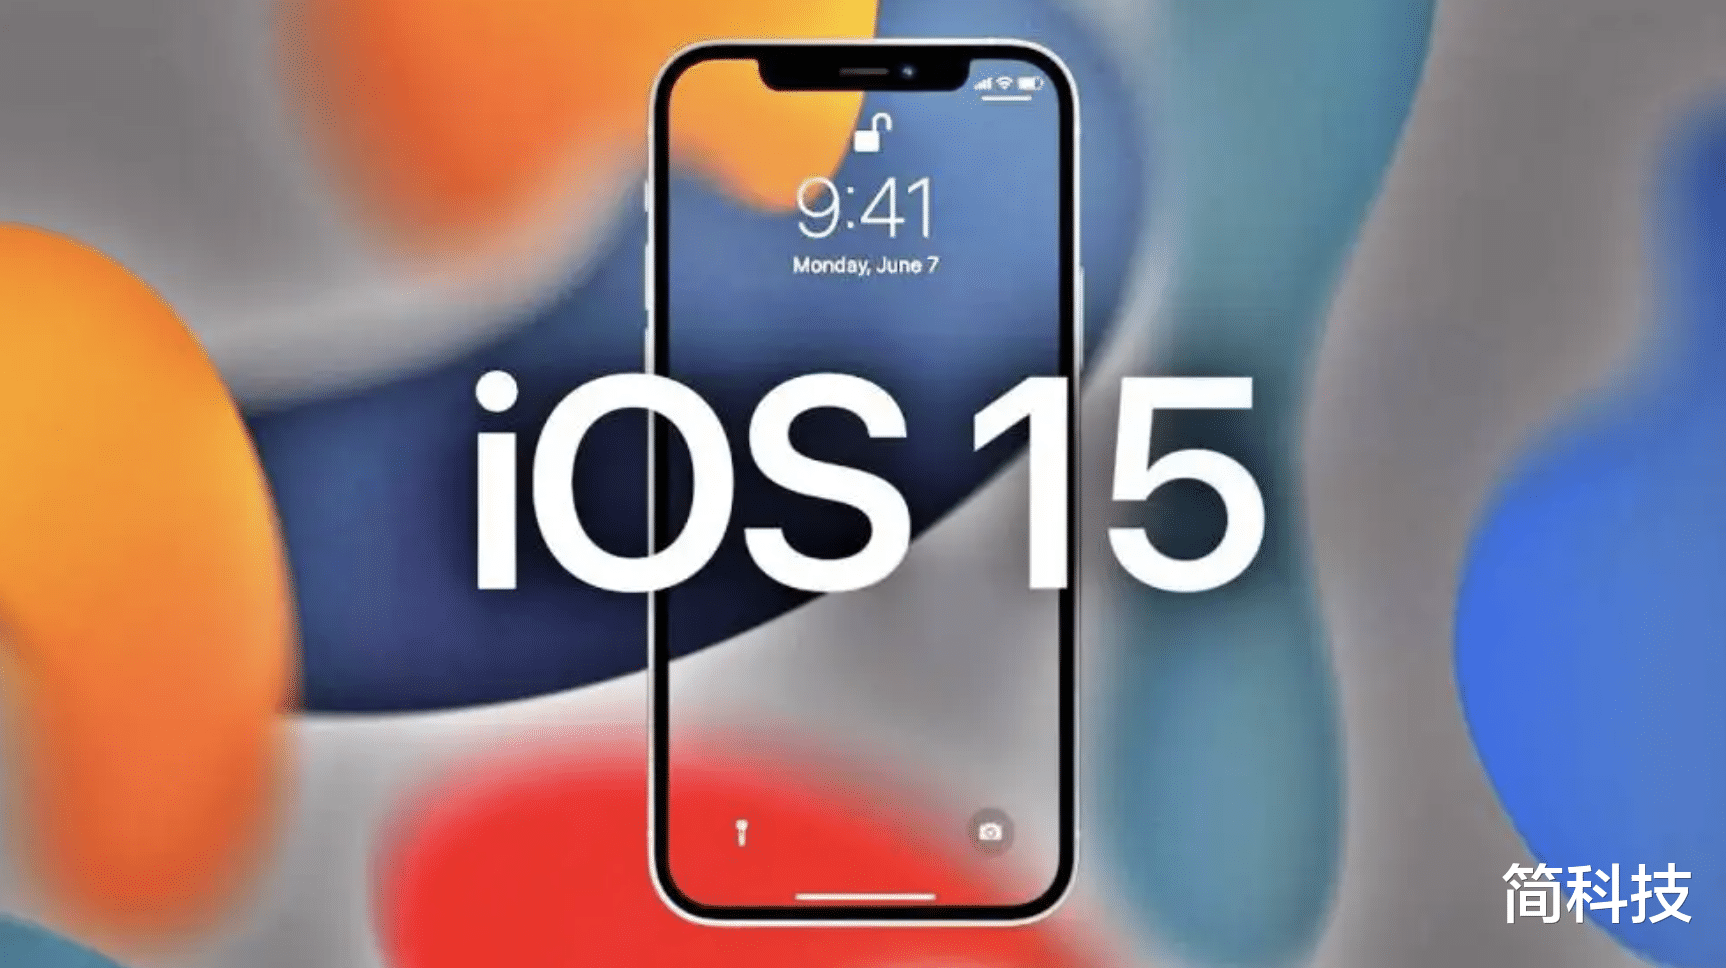 硬盘|苹果发布 iOS 15.6 beta3 测试版